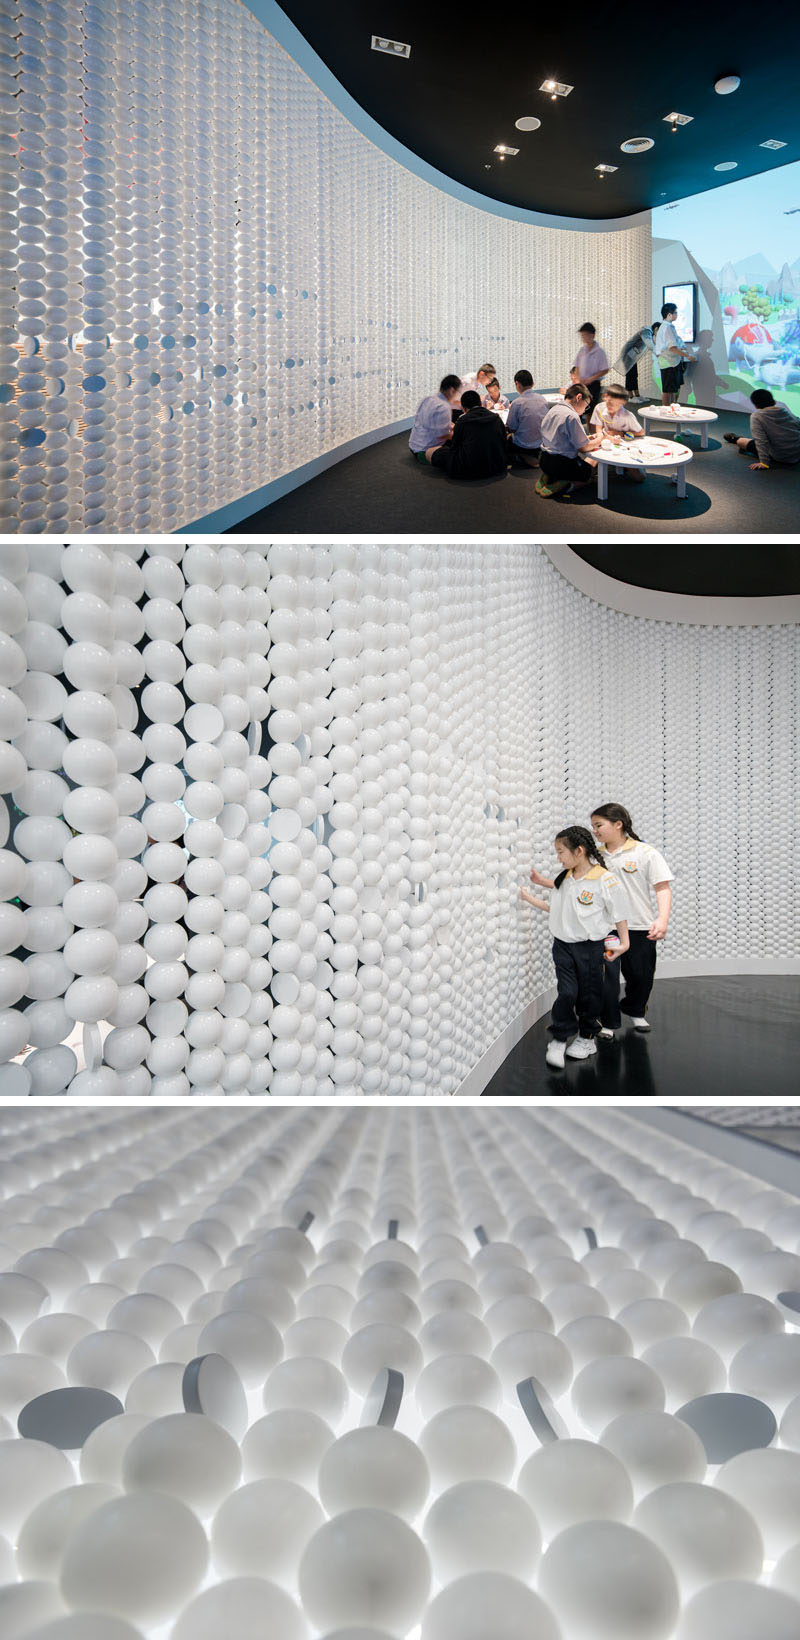  Стены из белых шаров придают этому современному игровому пространству уникальный и привлекательный вид. # РетейлДизайн # Стены # ИнтерьерДизайн 